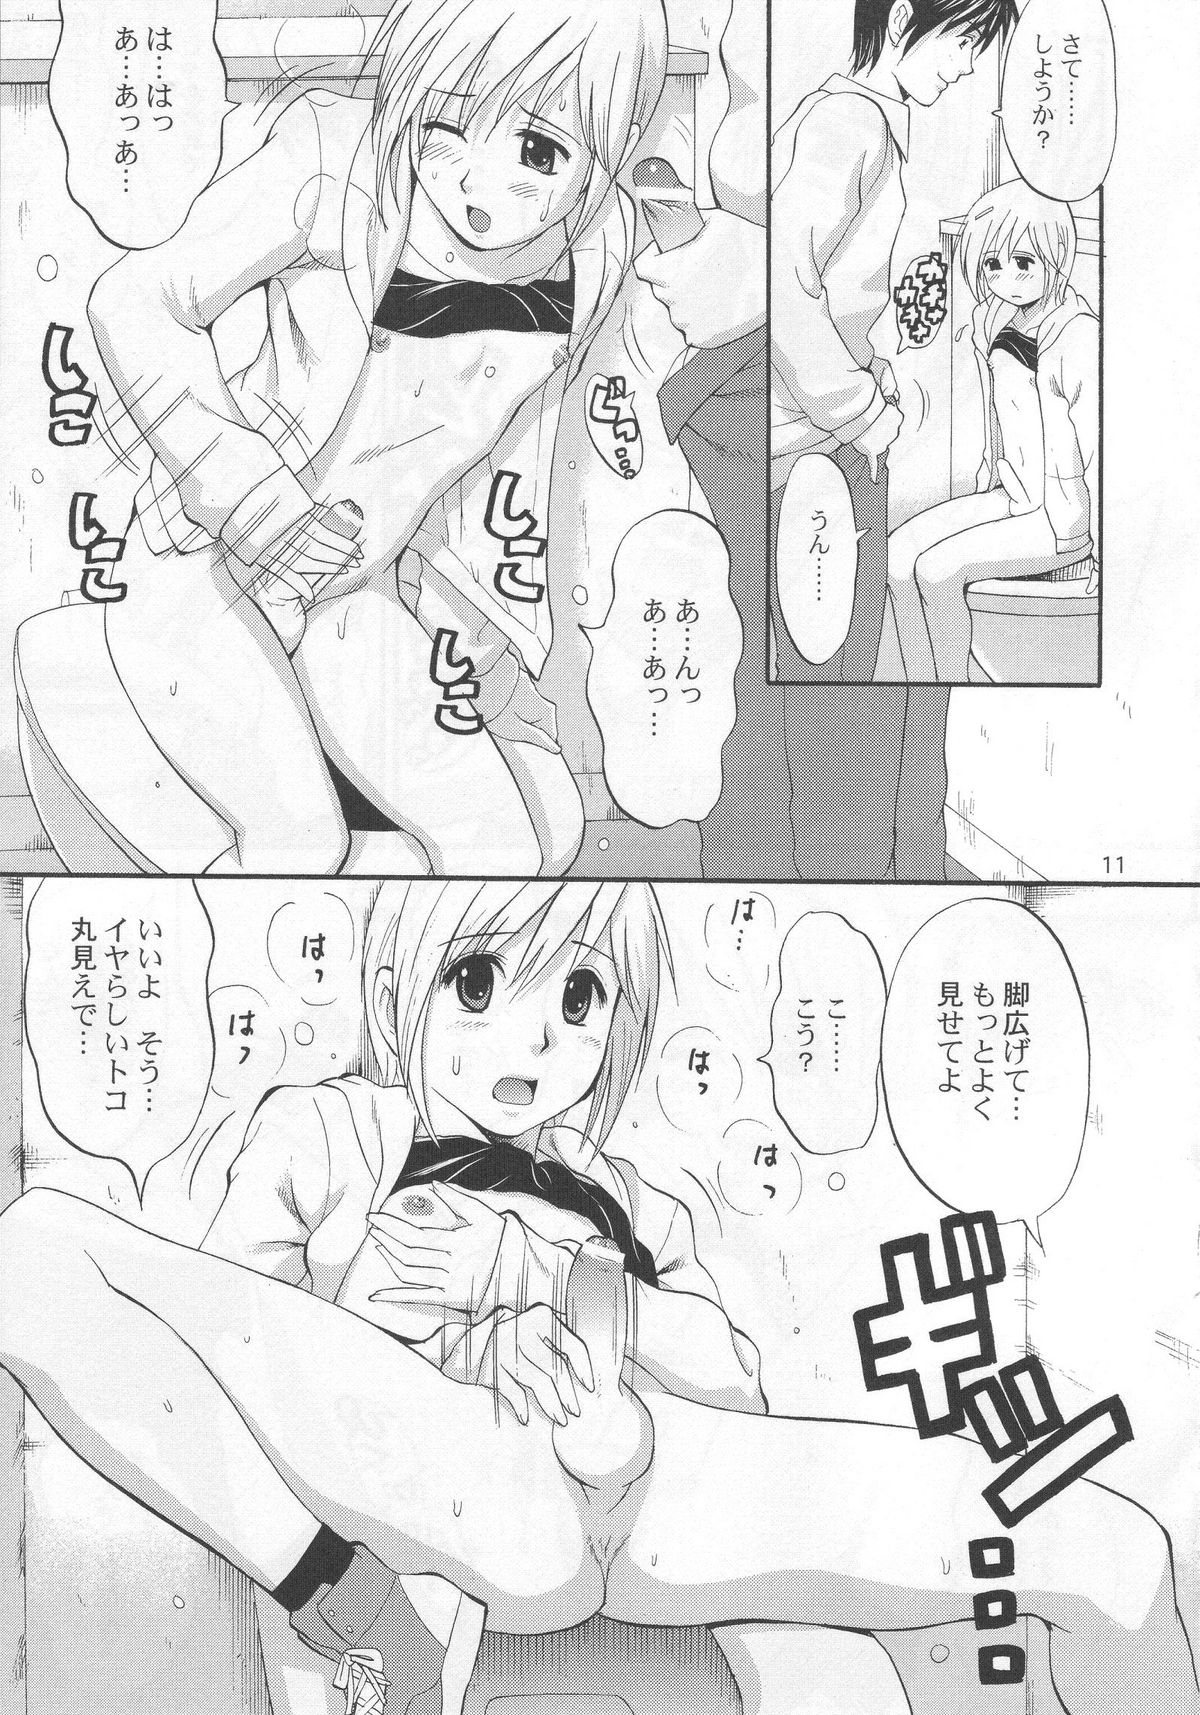 (COMIC1) [Saigado] Boku no Pico Comic + Koushiki Character Genanshuu (Boku no Pico) page 9 full